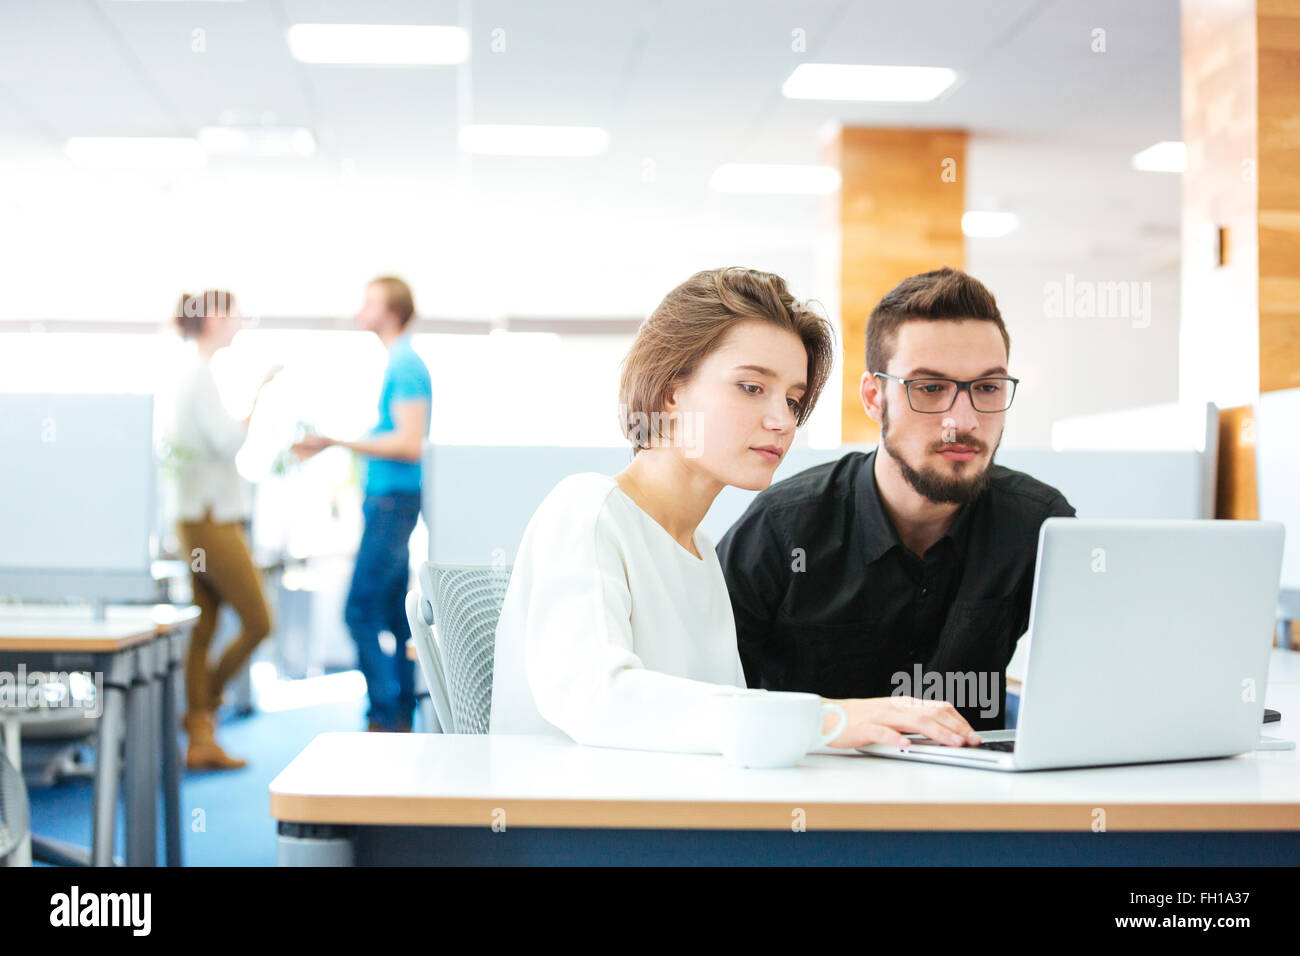 L'accent grave jeune homme et femme assise et travailler avec laptop in office Banque D'Images